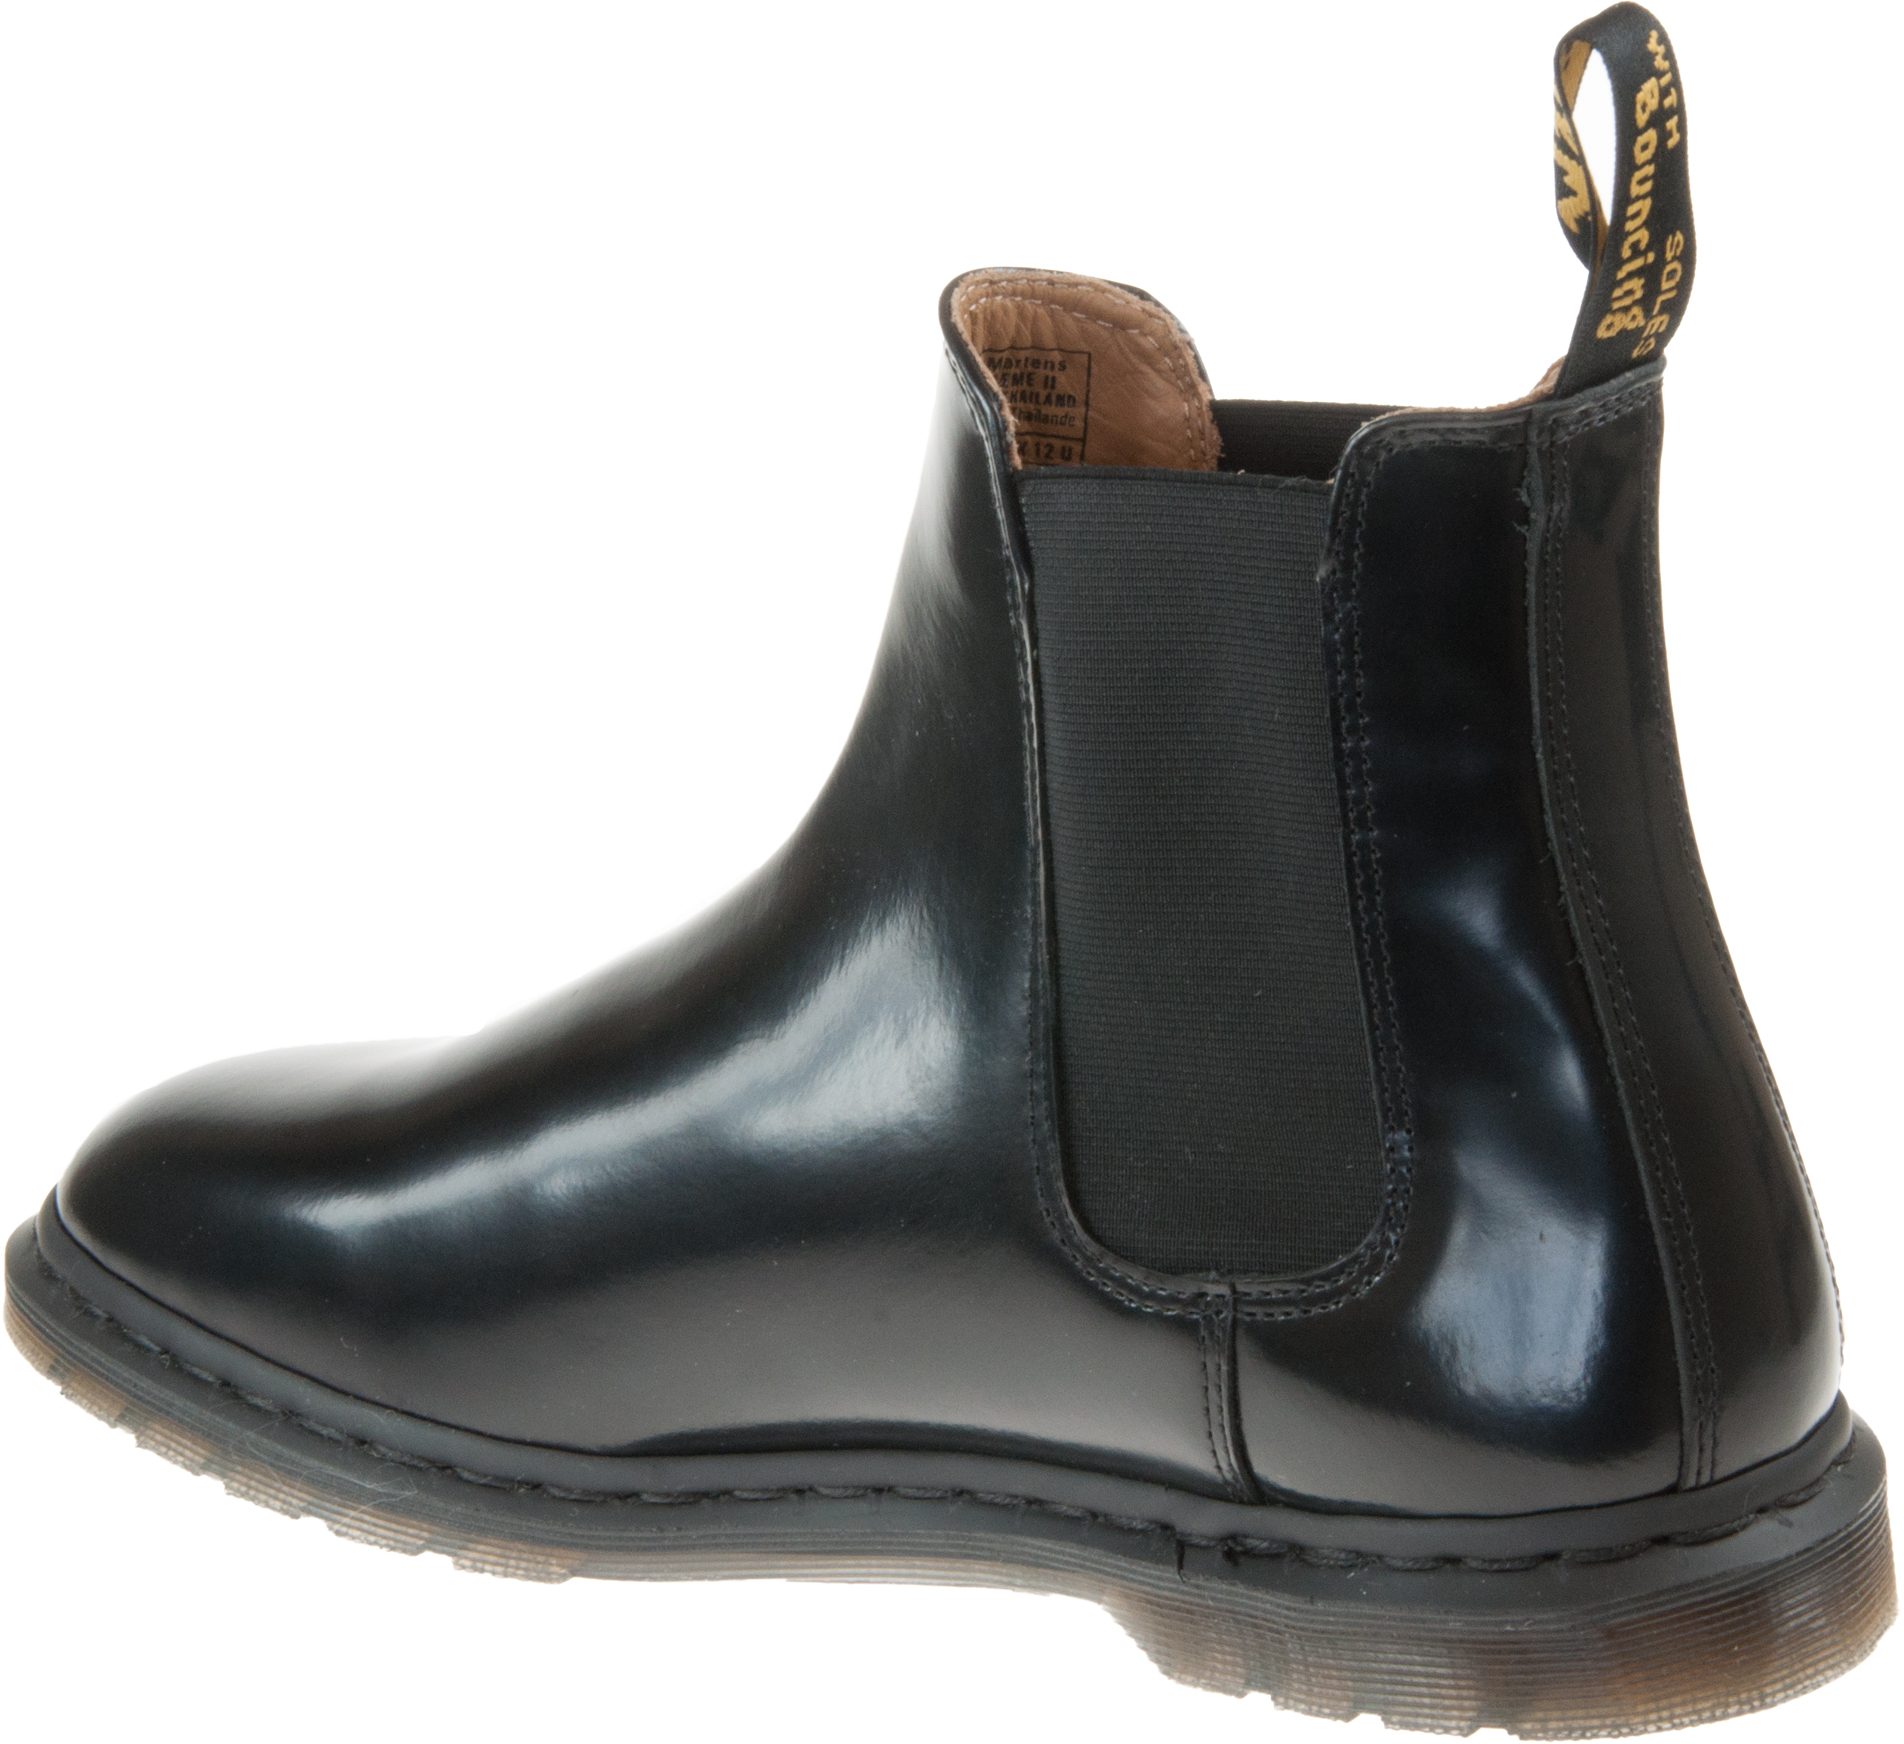 Dr. Martens Graeme II Black Polished Smooth 25031001 - Formal Boots ...